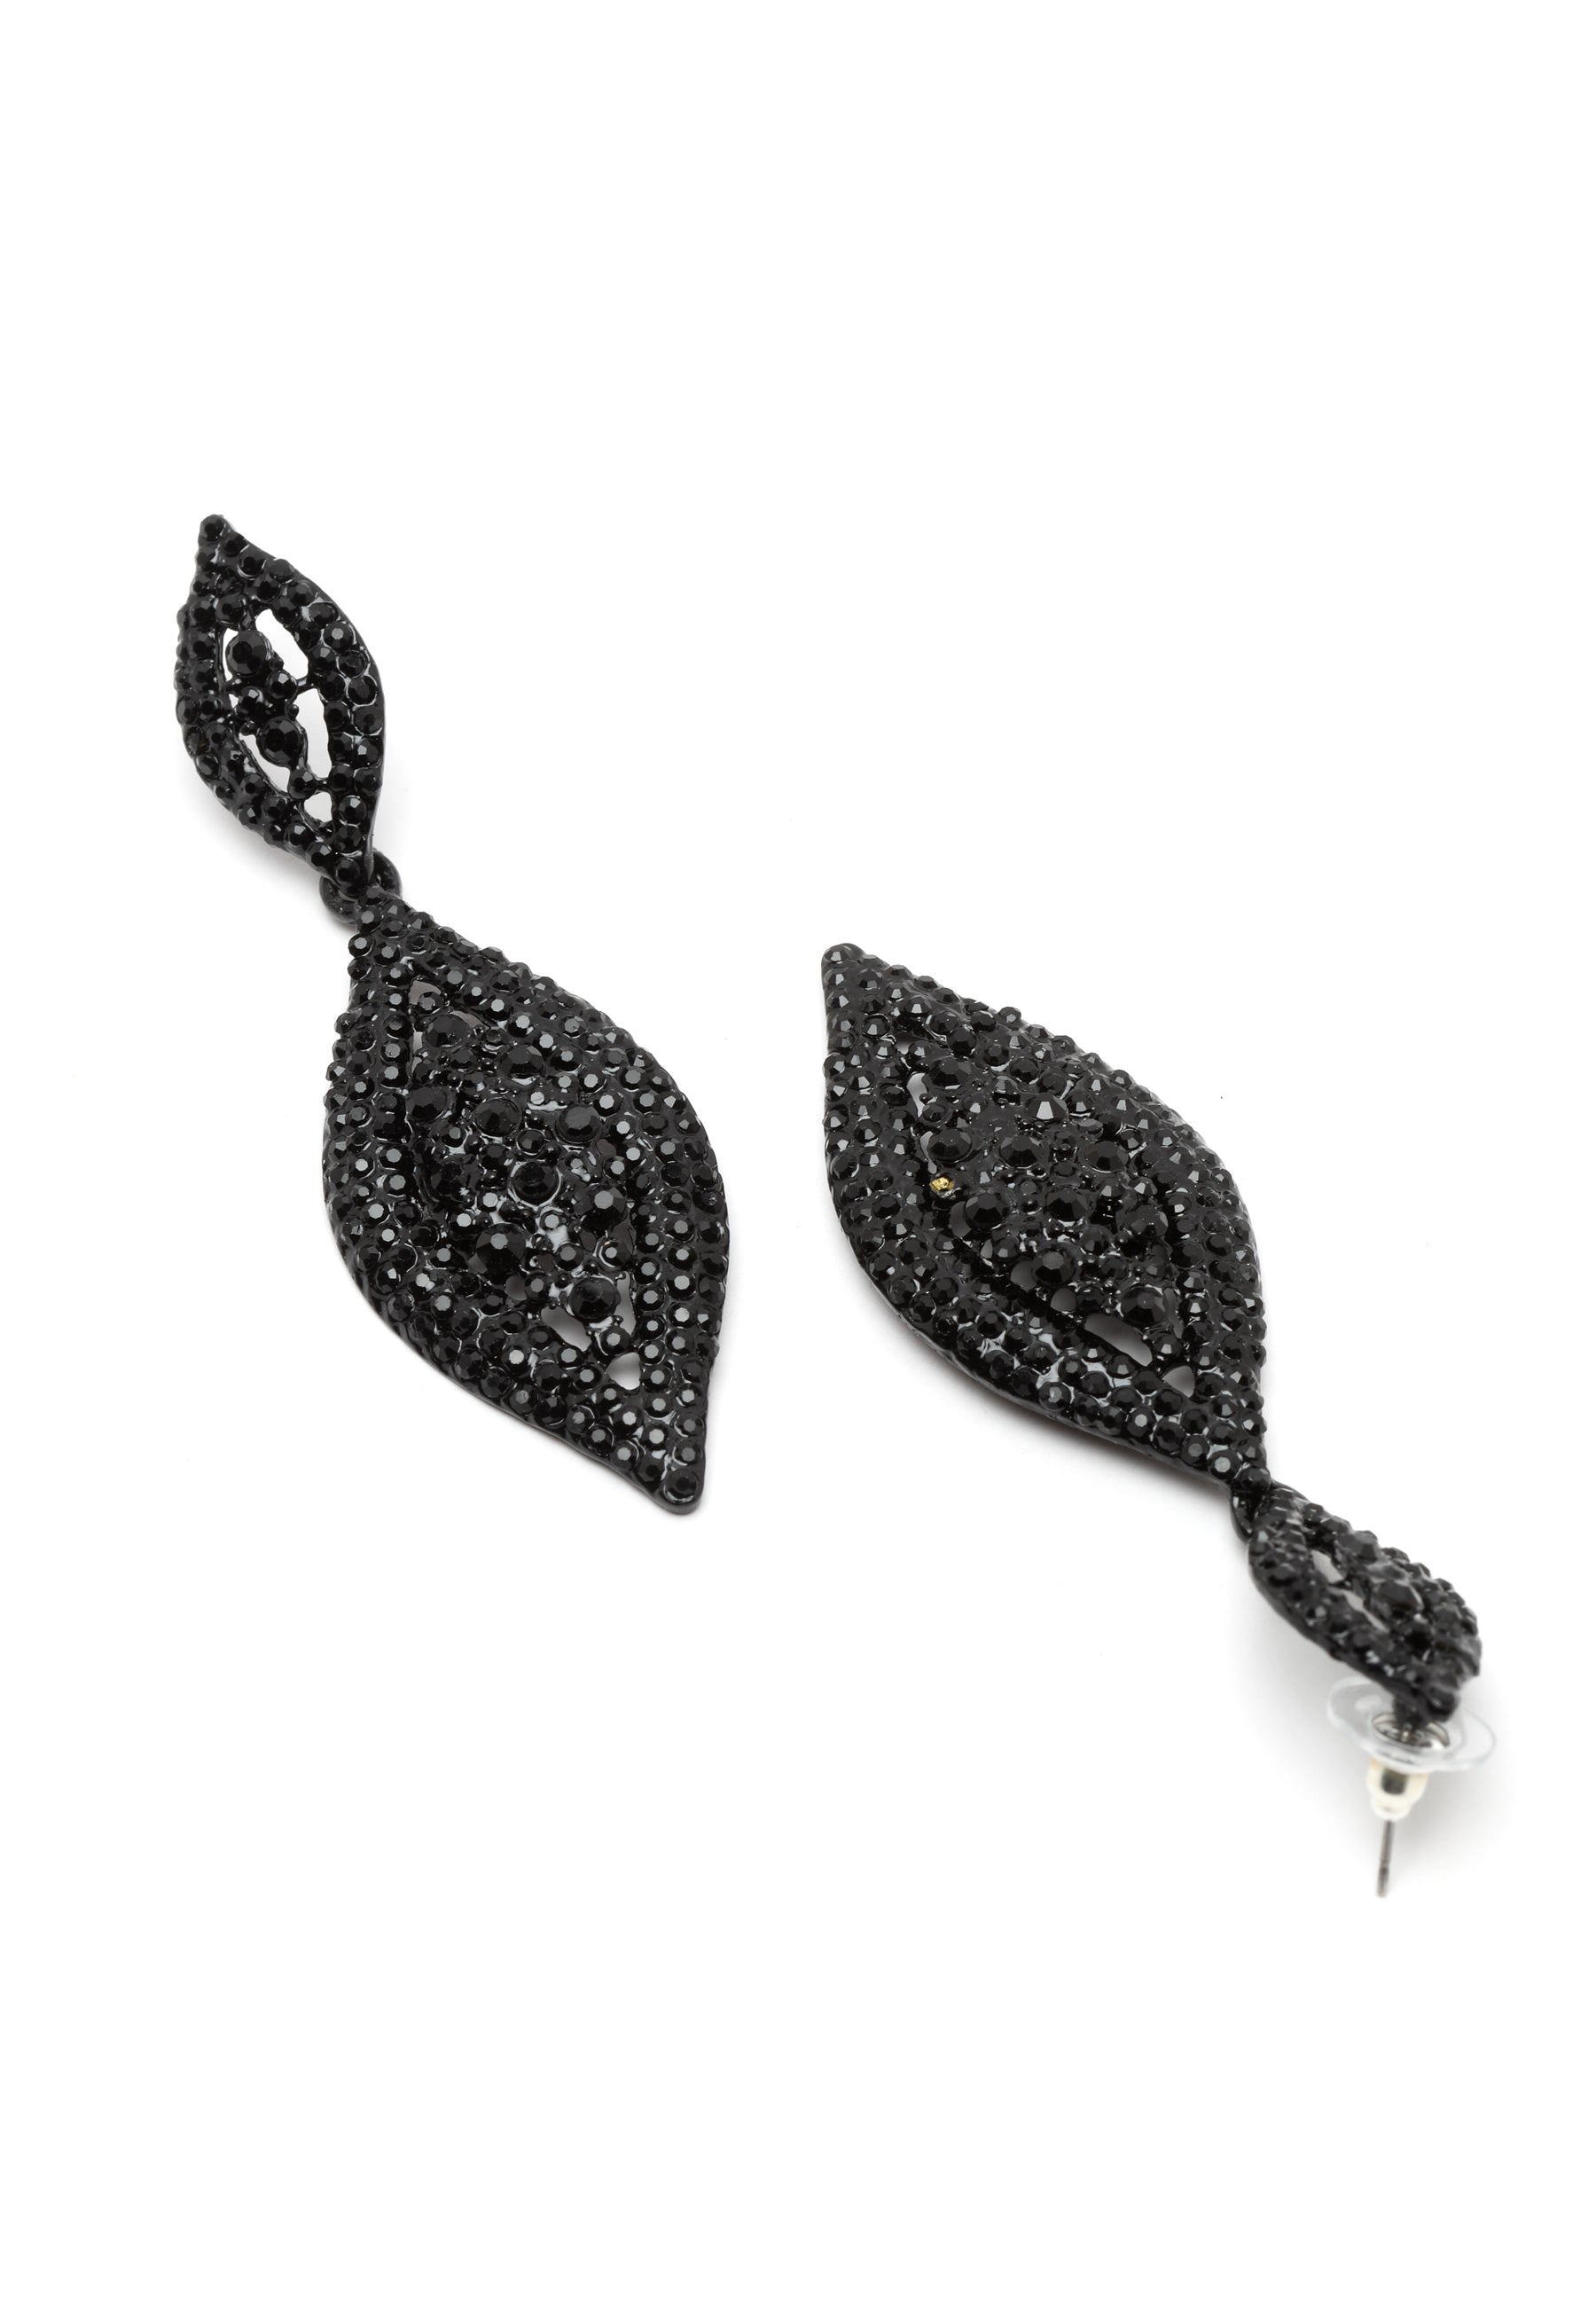 Luxury Drop Earrings in Black